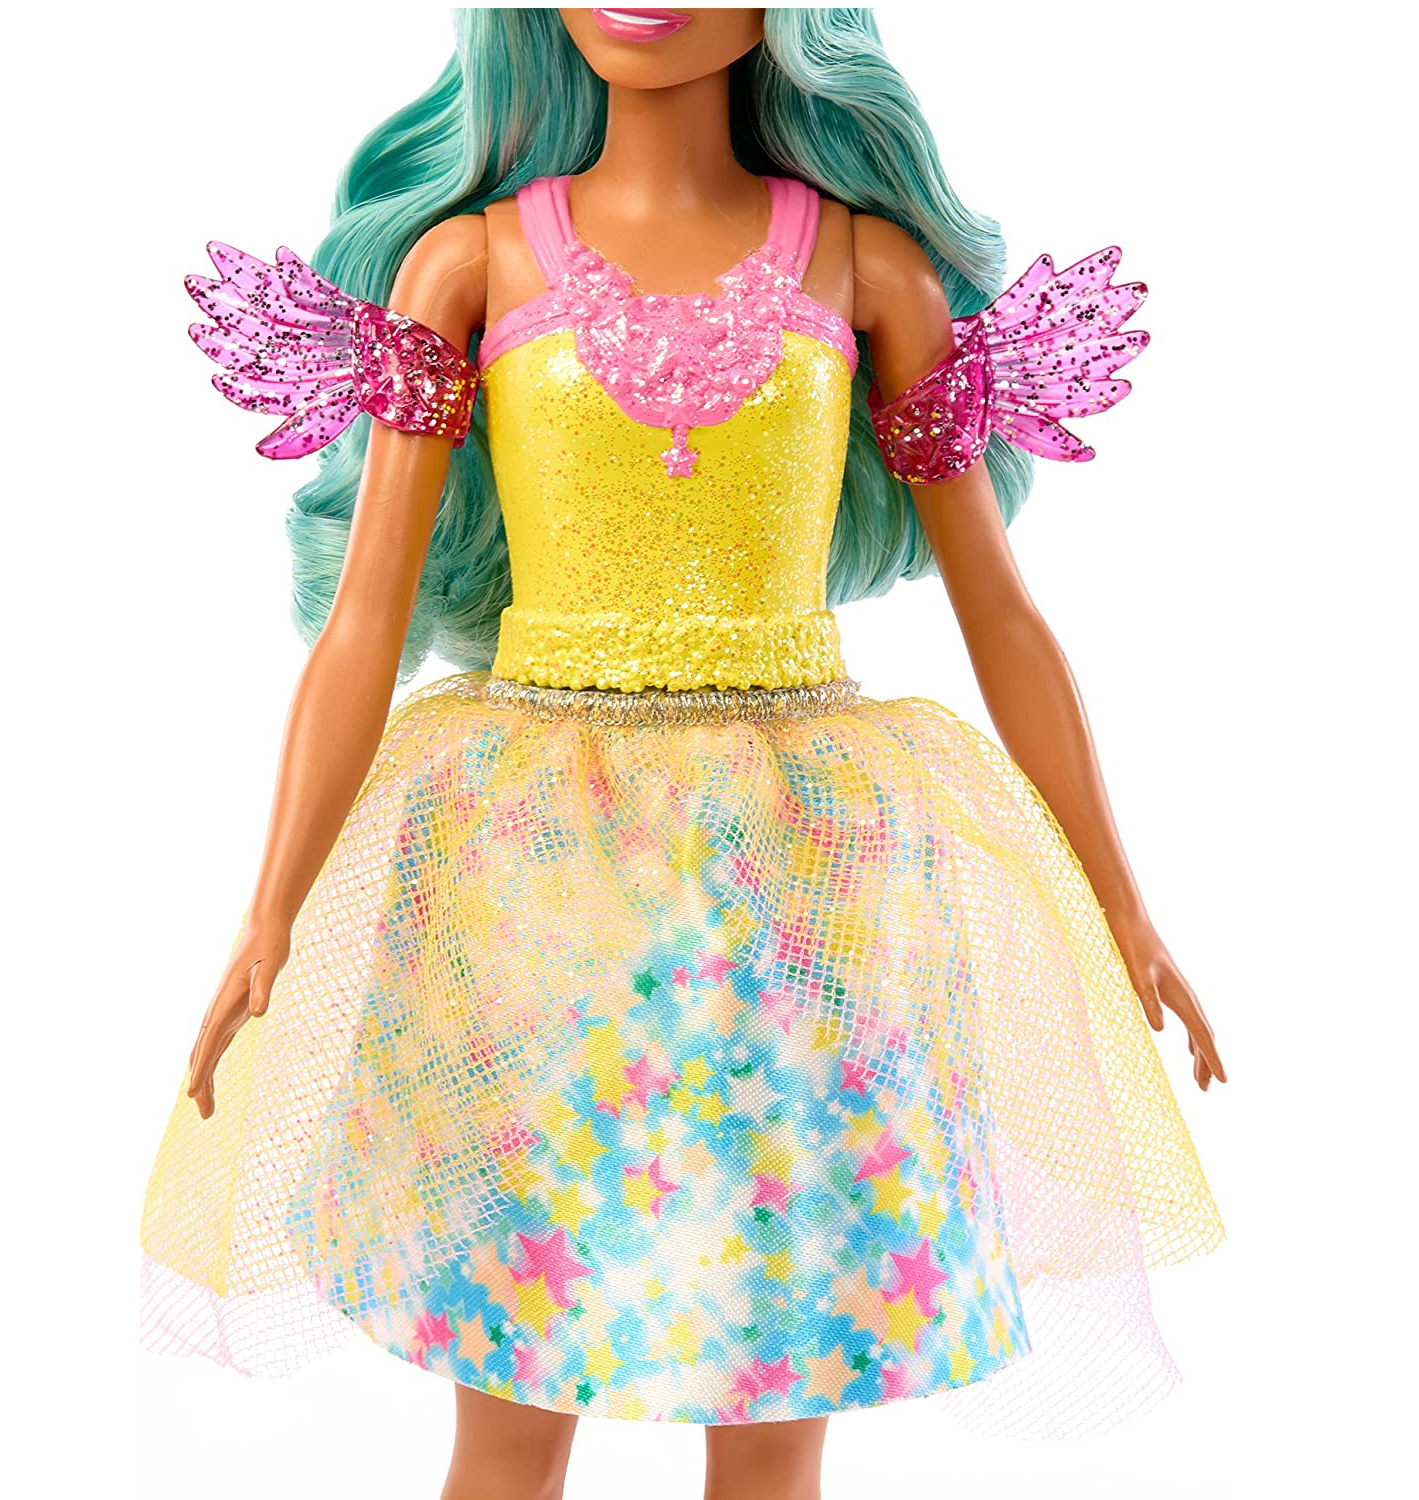 Boneca Barbie Roupa Amarela Conto de Fadas Um Toque de Mágica Mattel -  Fátima Criança